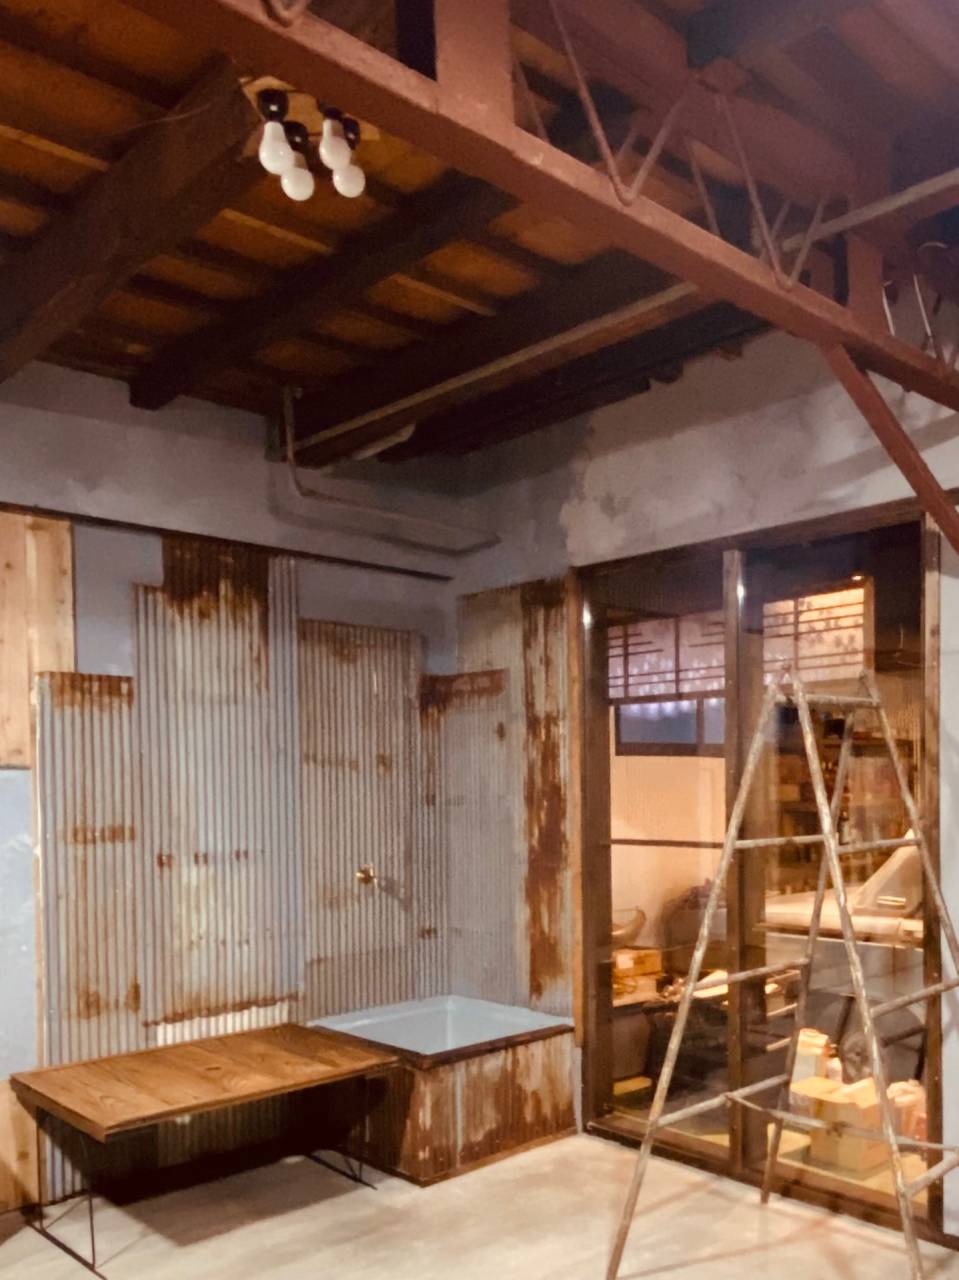 店舗奥水屋、壁は既存のトタンを張替え天井は既存の建屋そのままに軽量鉄骨と木とのミックス工法により年月が経った今ではとても味わいのある唯一無二の素敵な空間となっております。